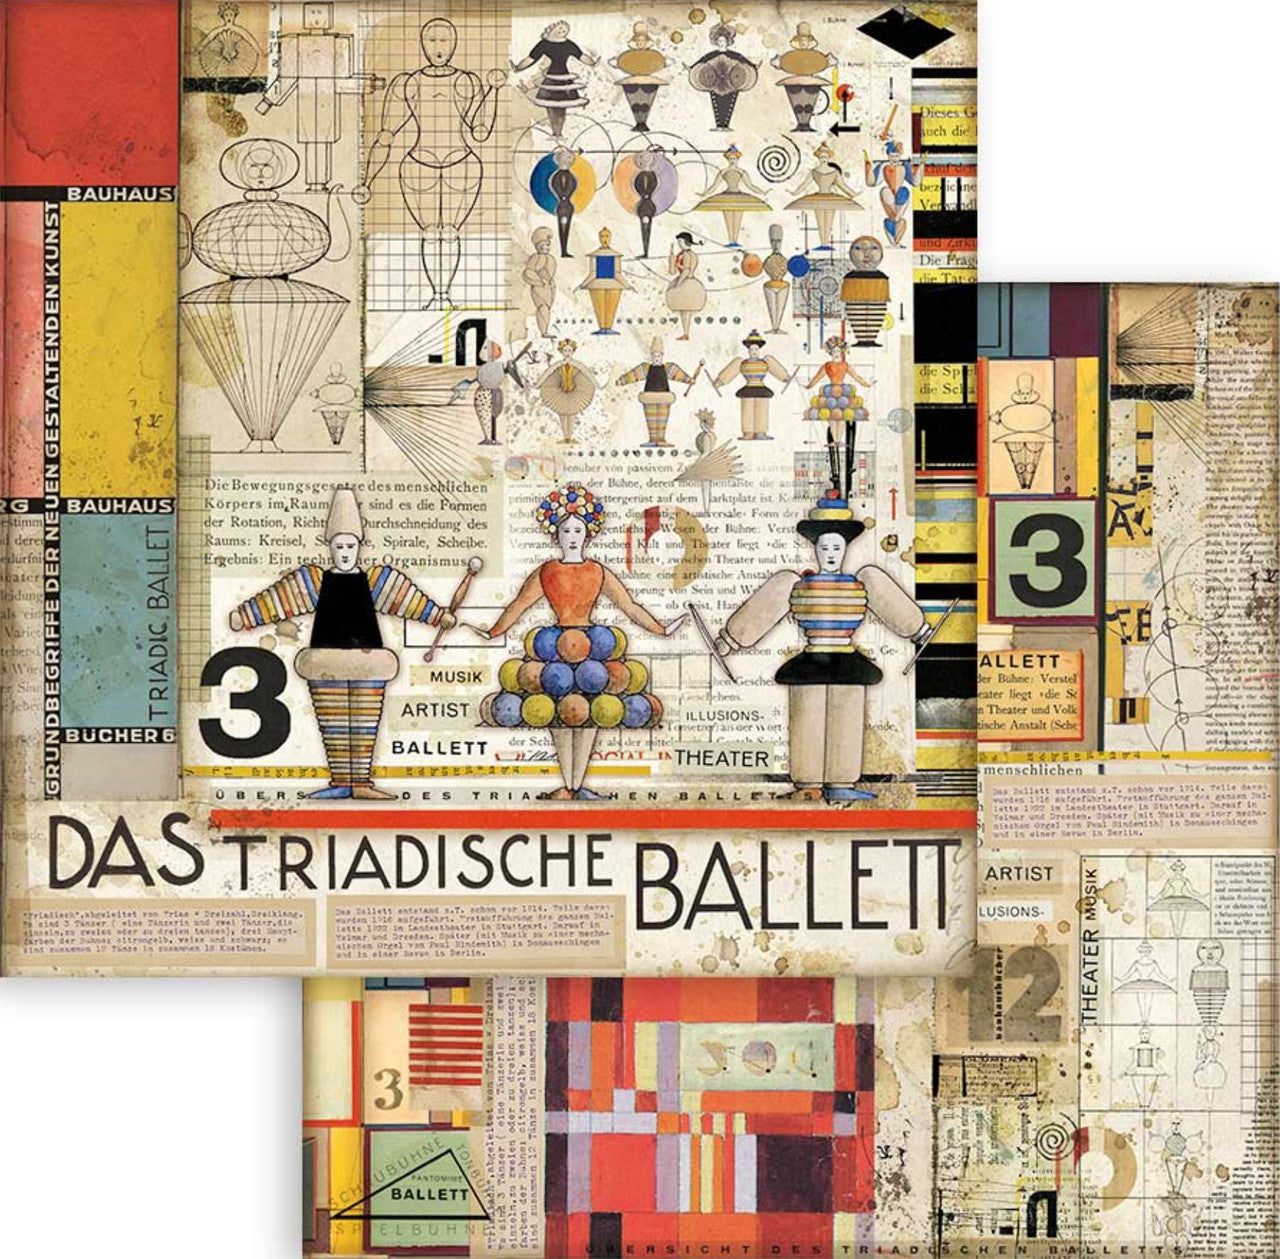 Stamperia Bauhaus 12 "x 12" papiercollectie